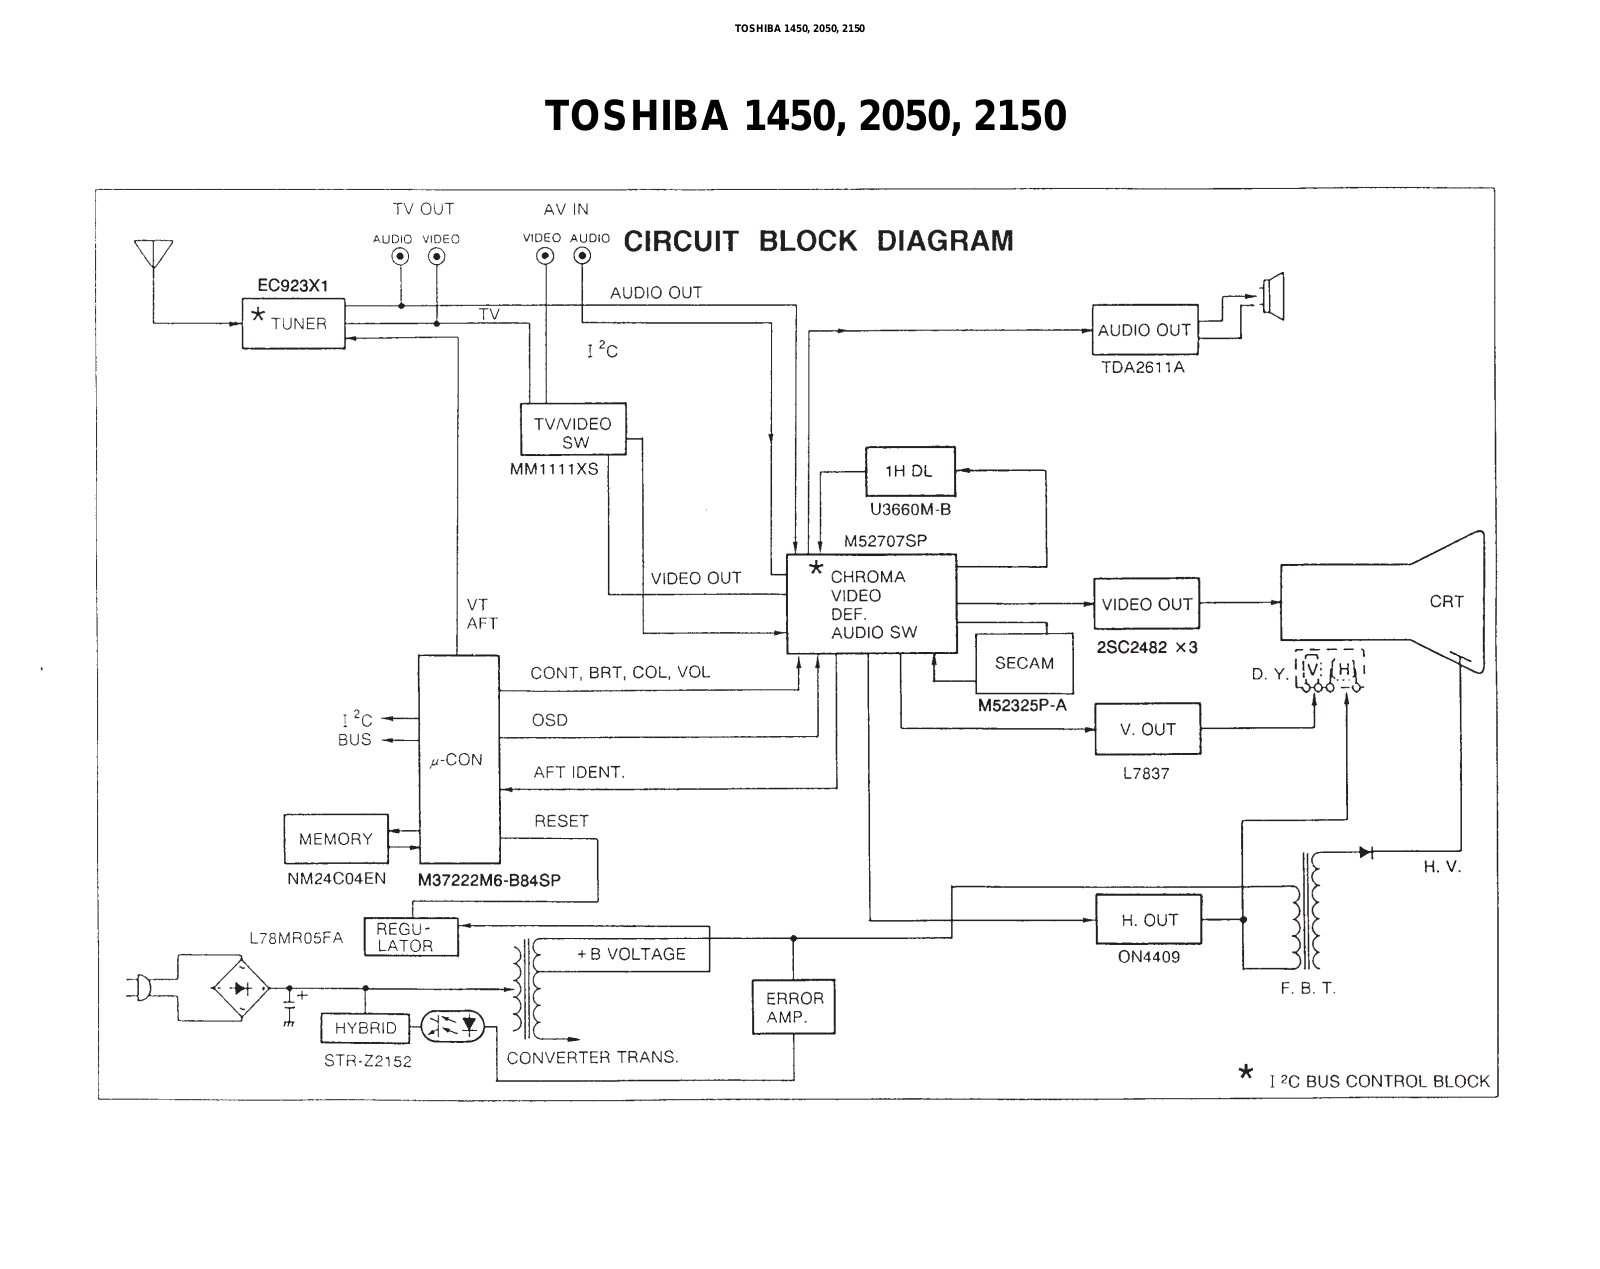 Toshiba 2150, 2050, 1450 Service Manual